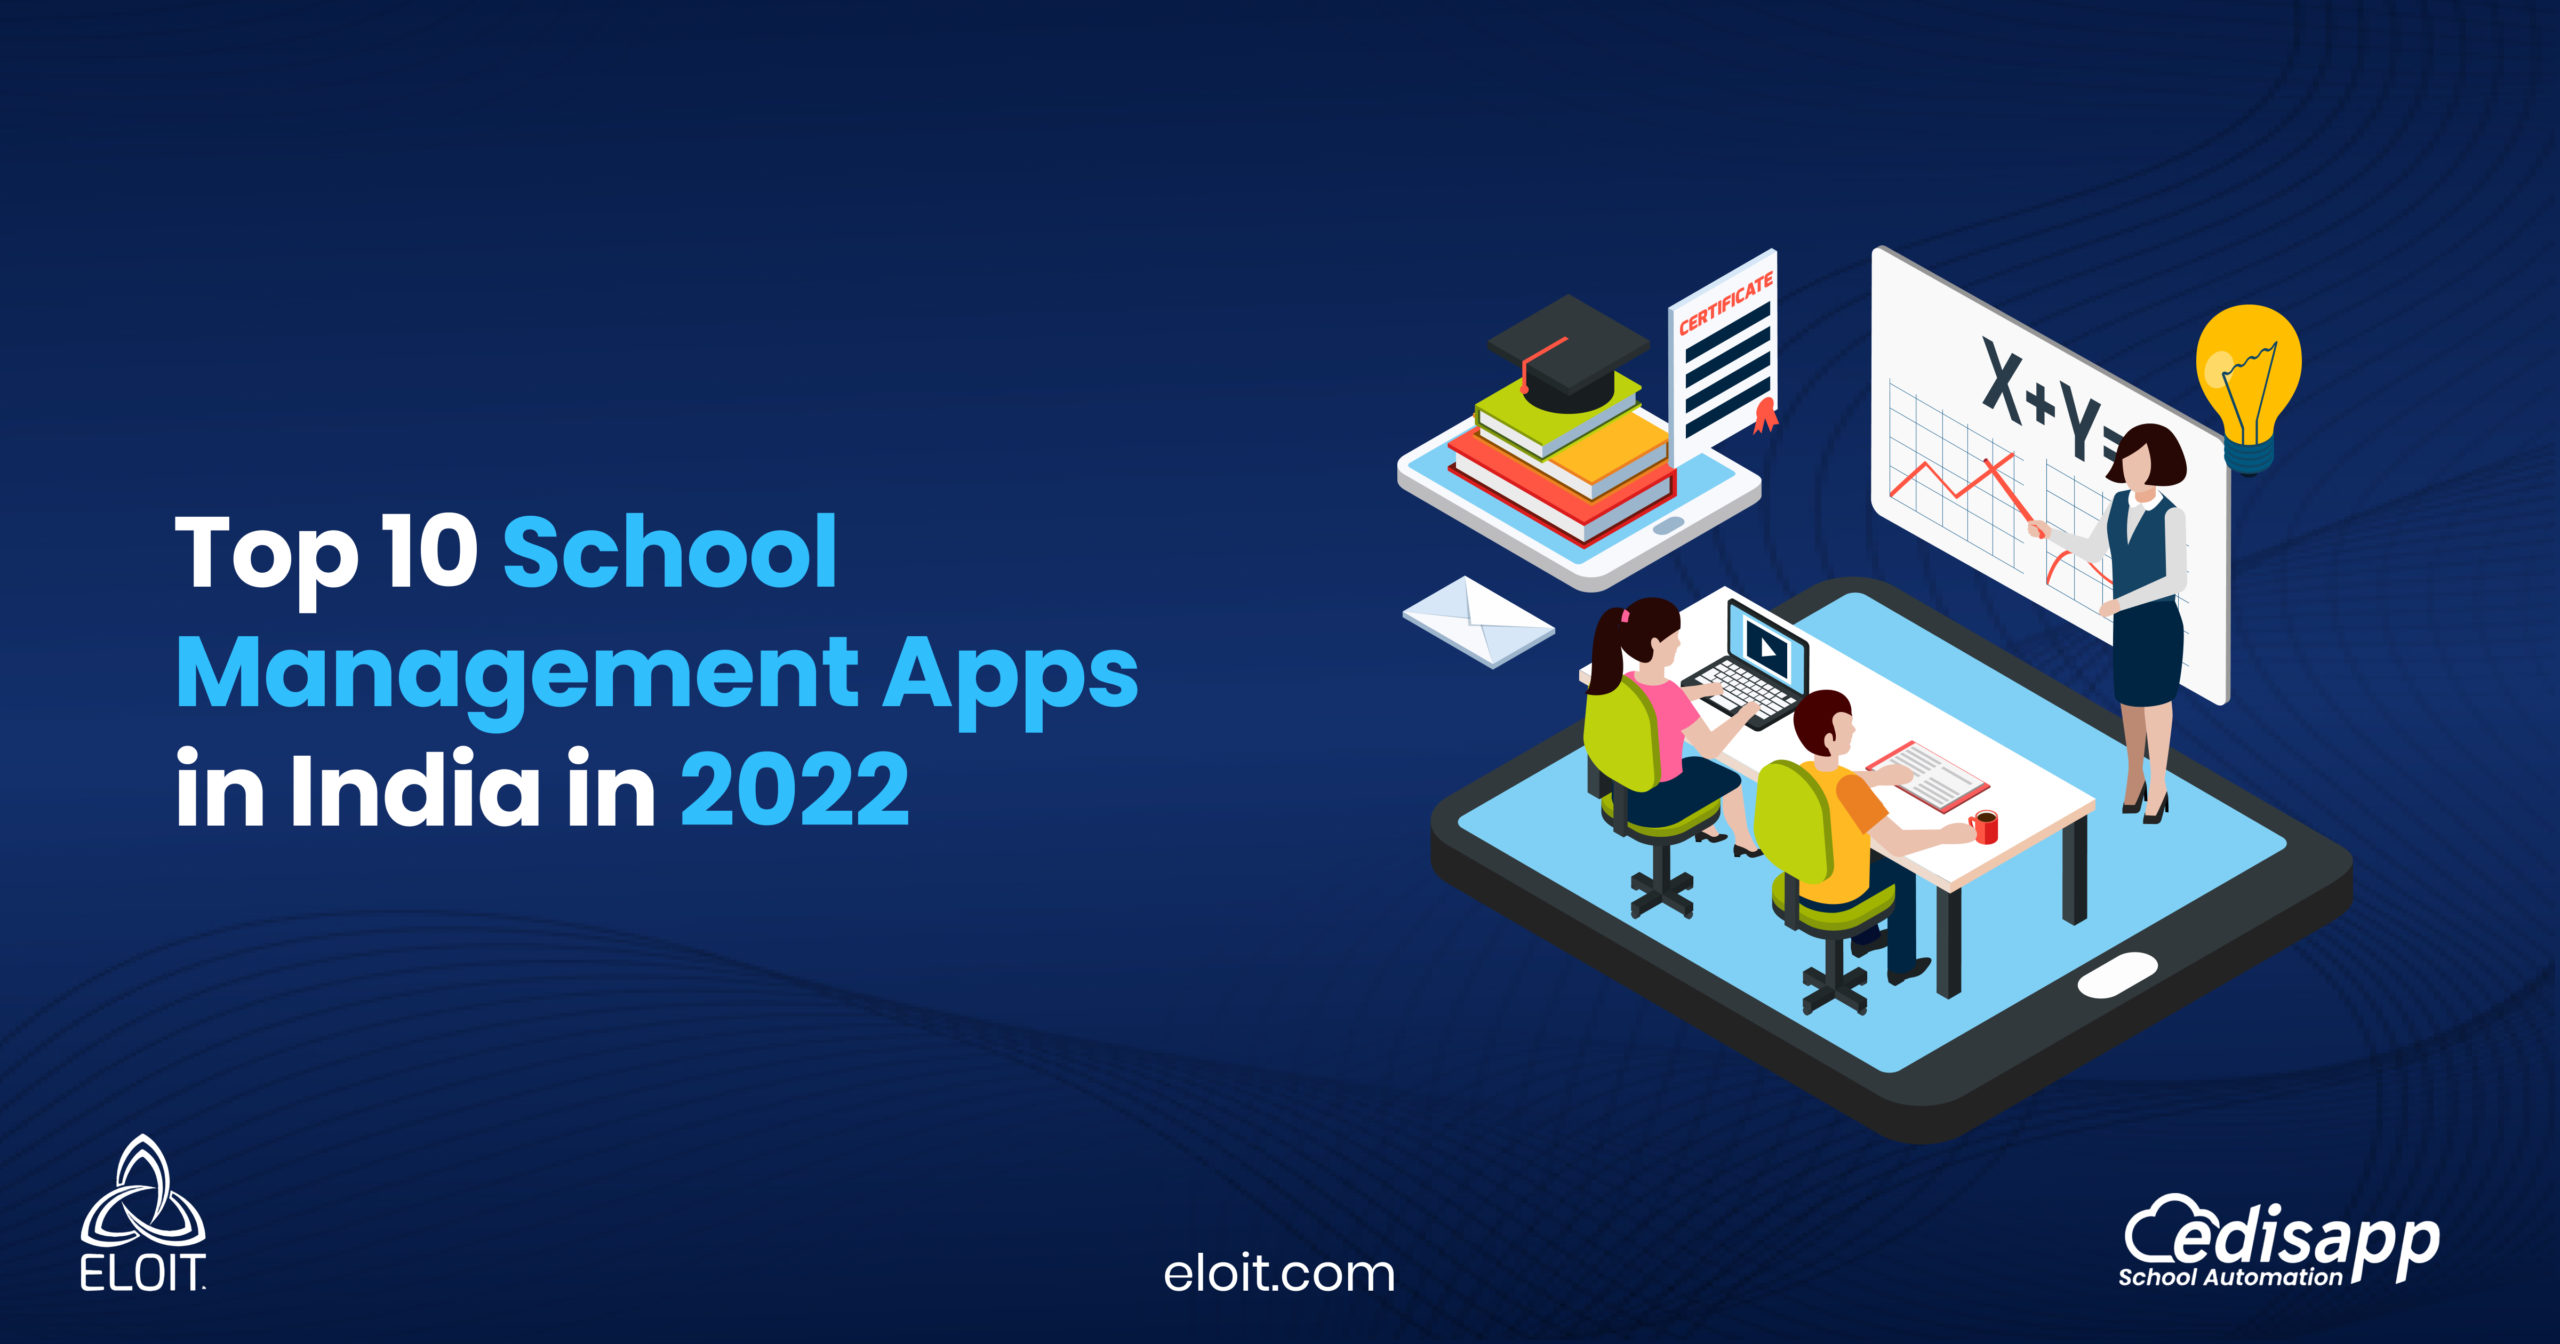 Top 10 School Management Apps in India in 2022